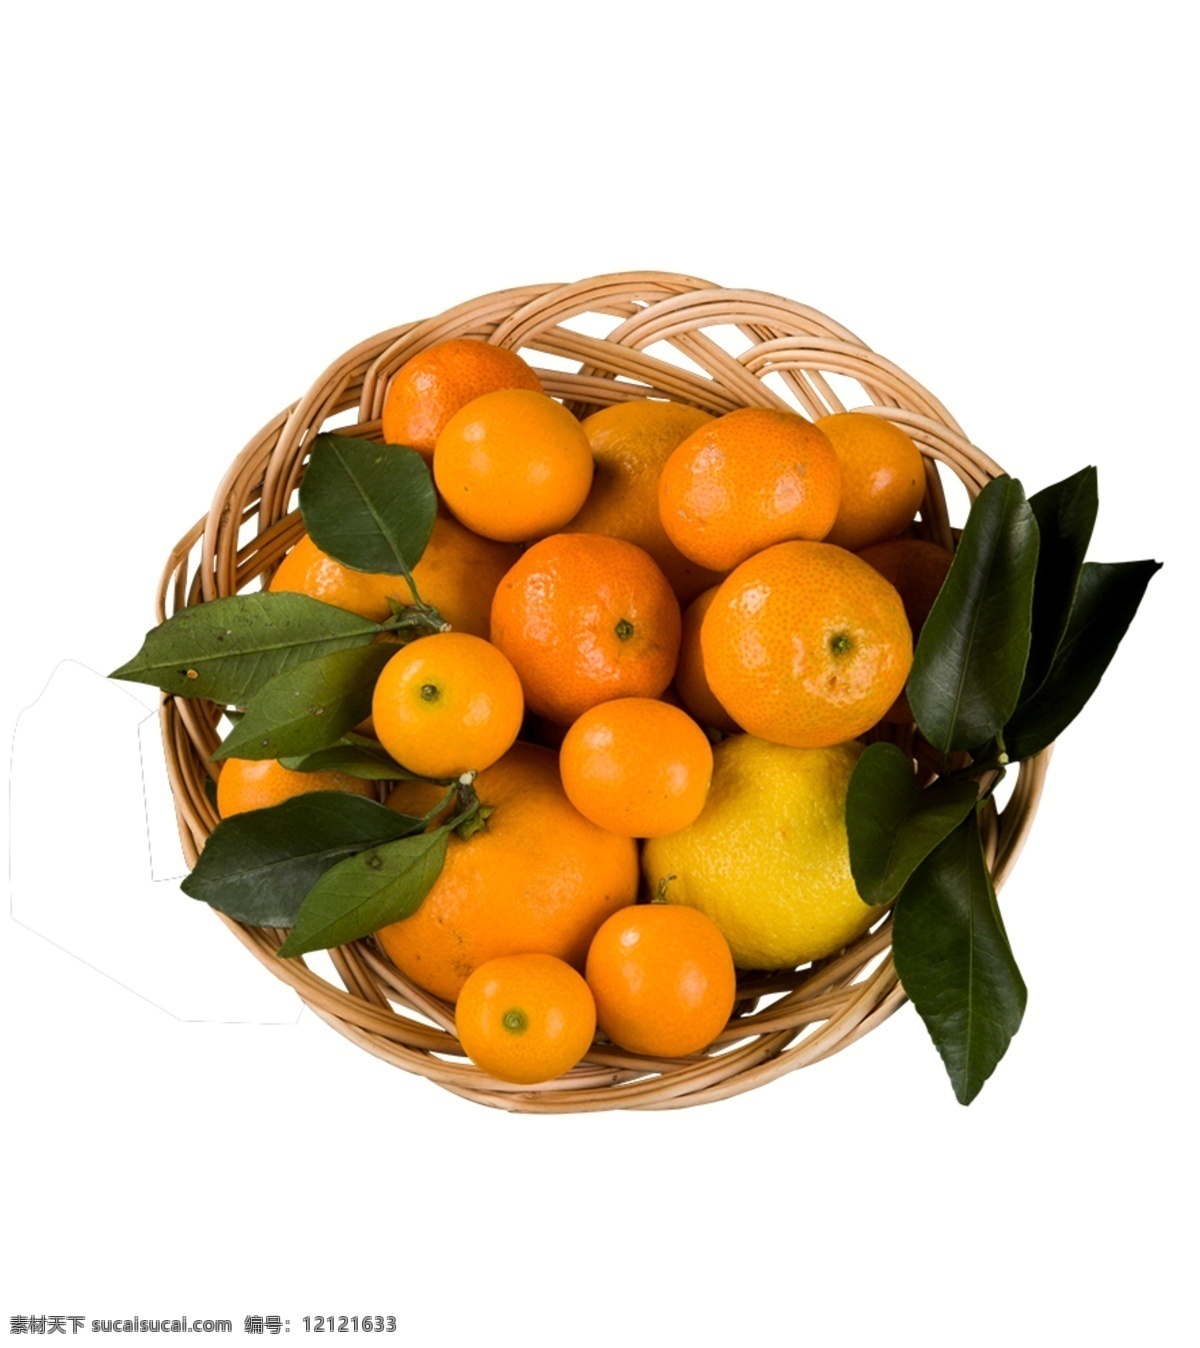 水果 镂空 篮子 矢量图 镂空水果篮 一堆橙子 橘子 橙色 绿色水果 维生素c 叶子 营养 食物